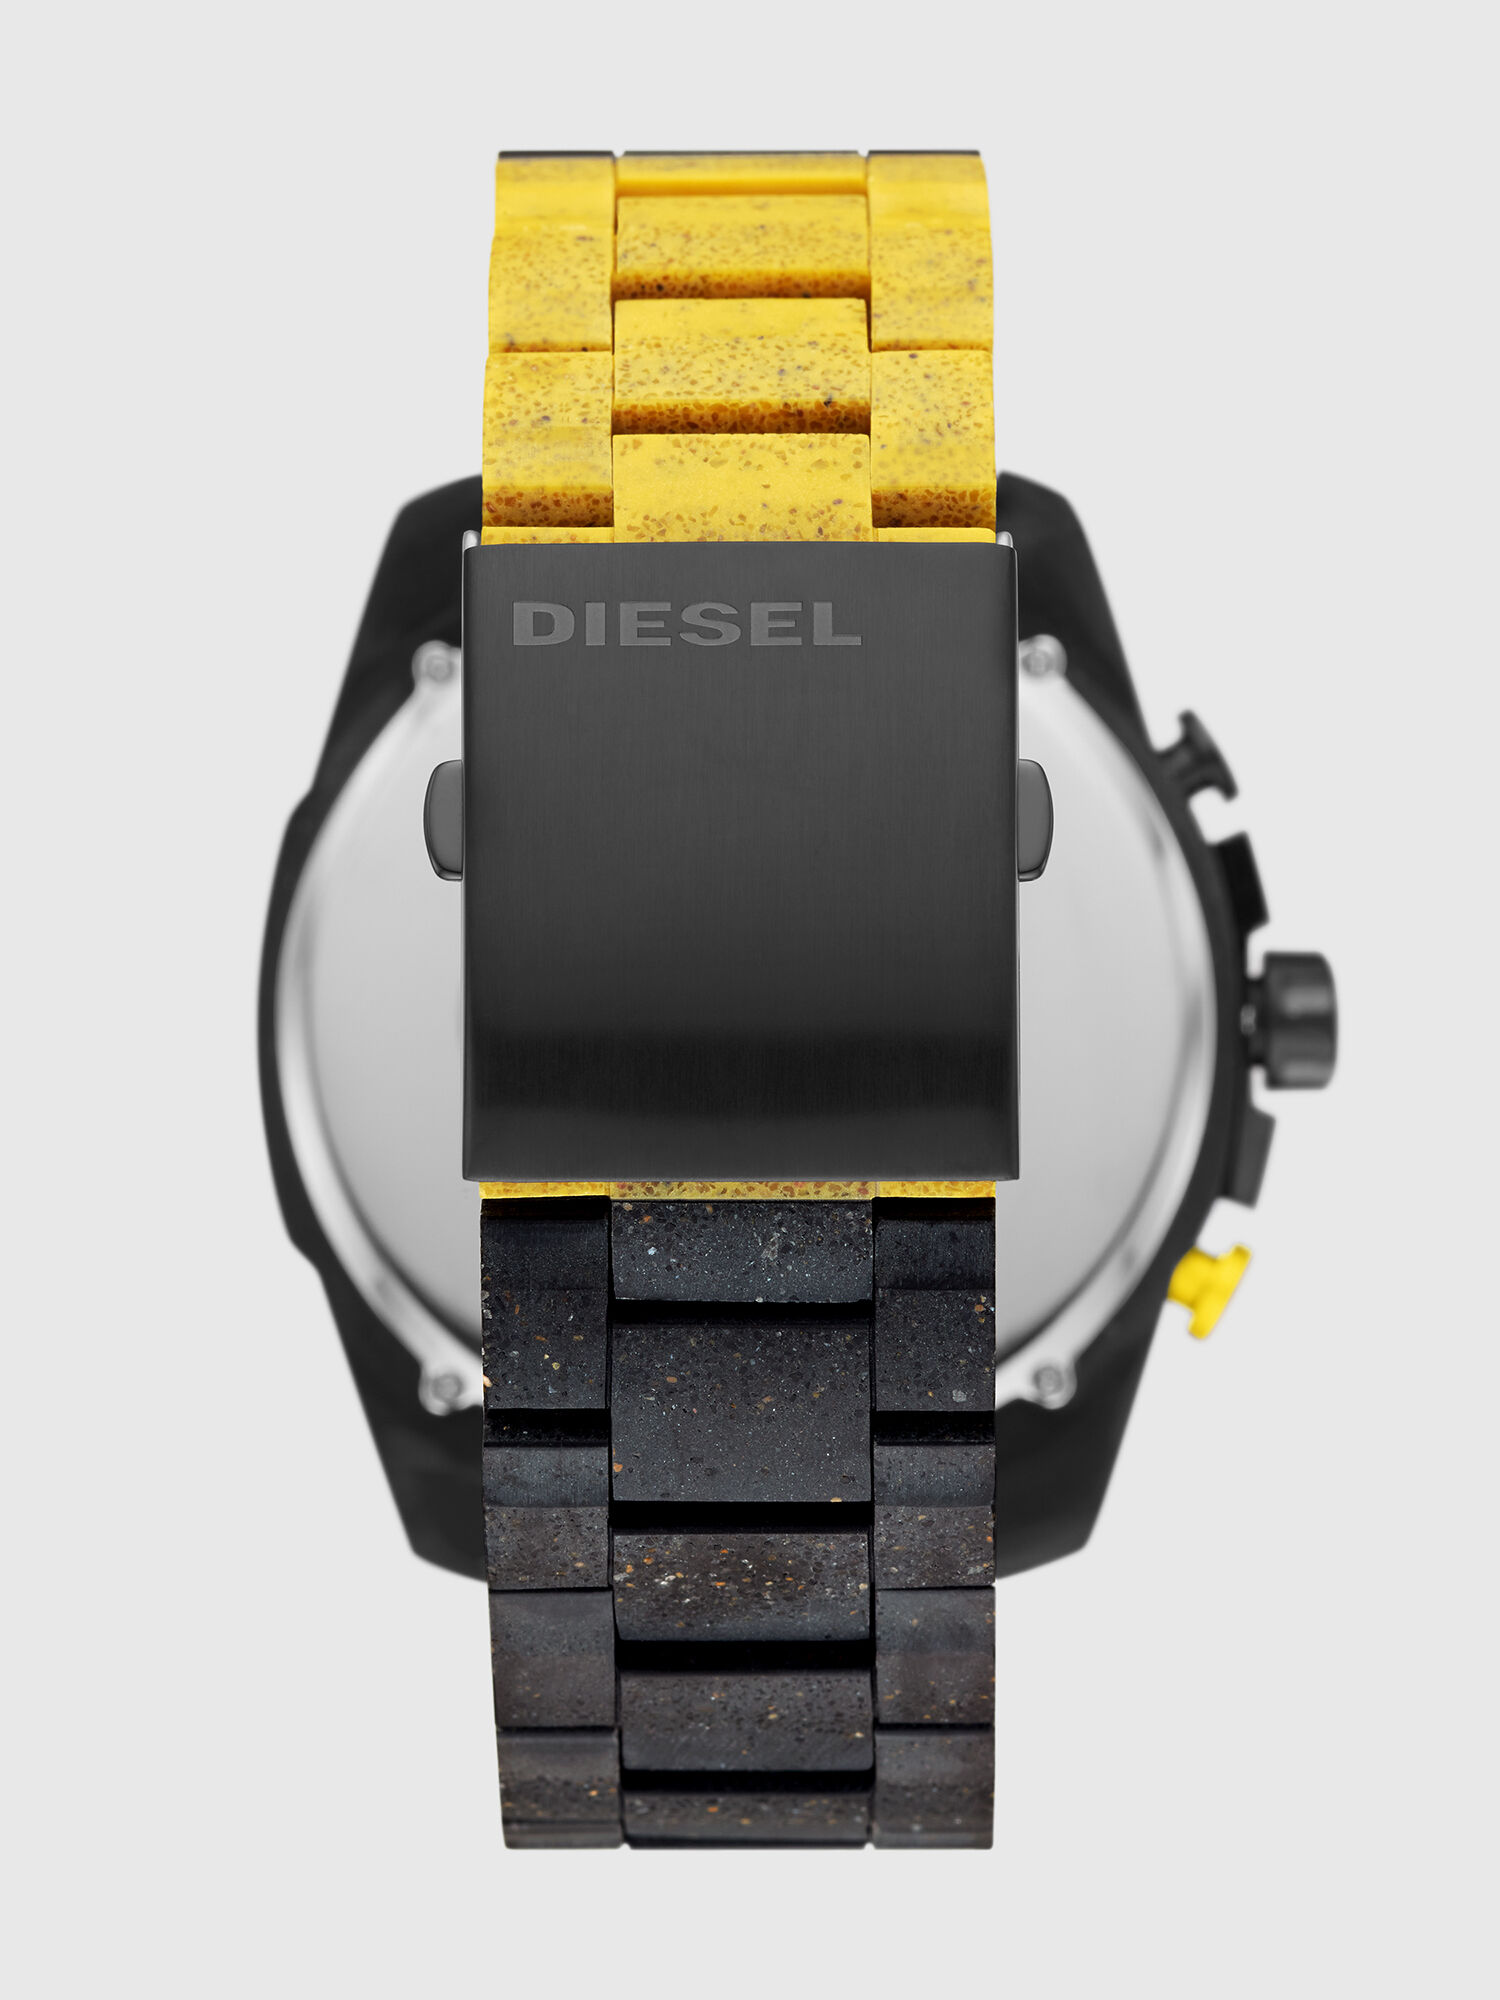 Diesel - DZ4539, Black/Yellow - Image 2